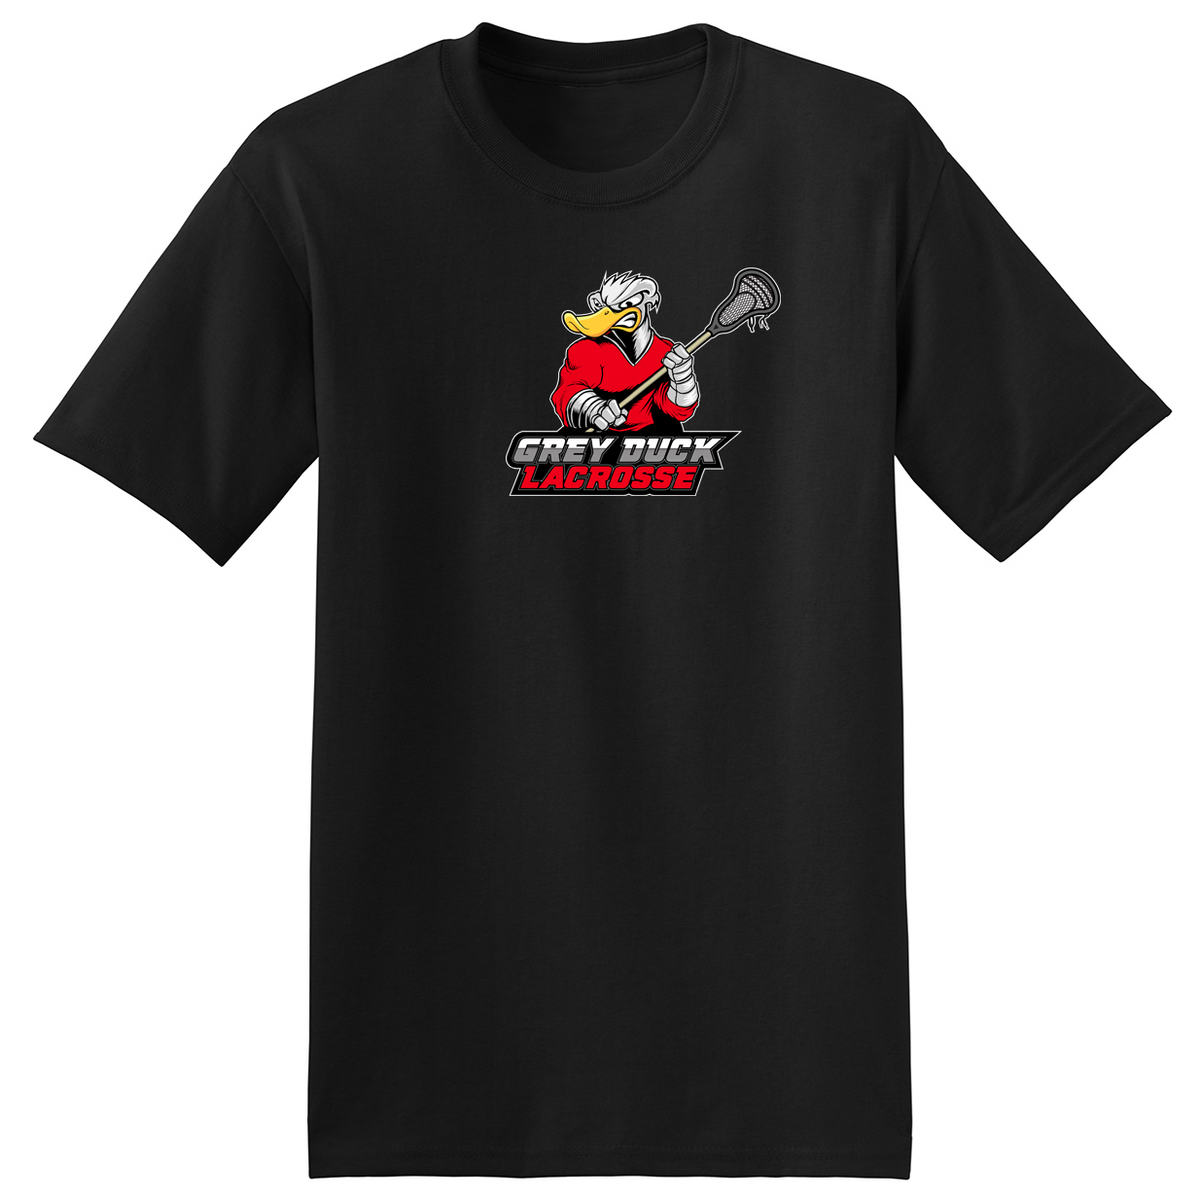 Grey Duck Lacrosse T-Shirt